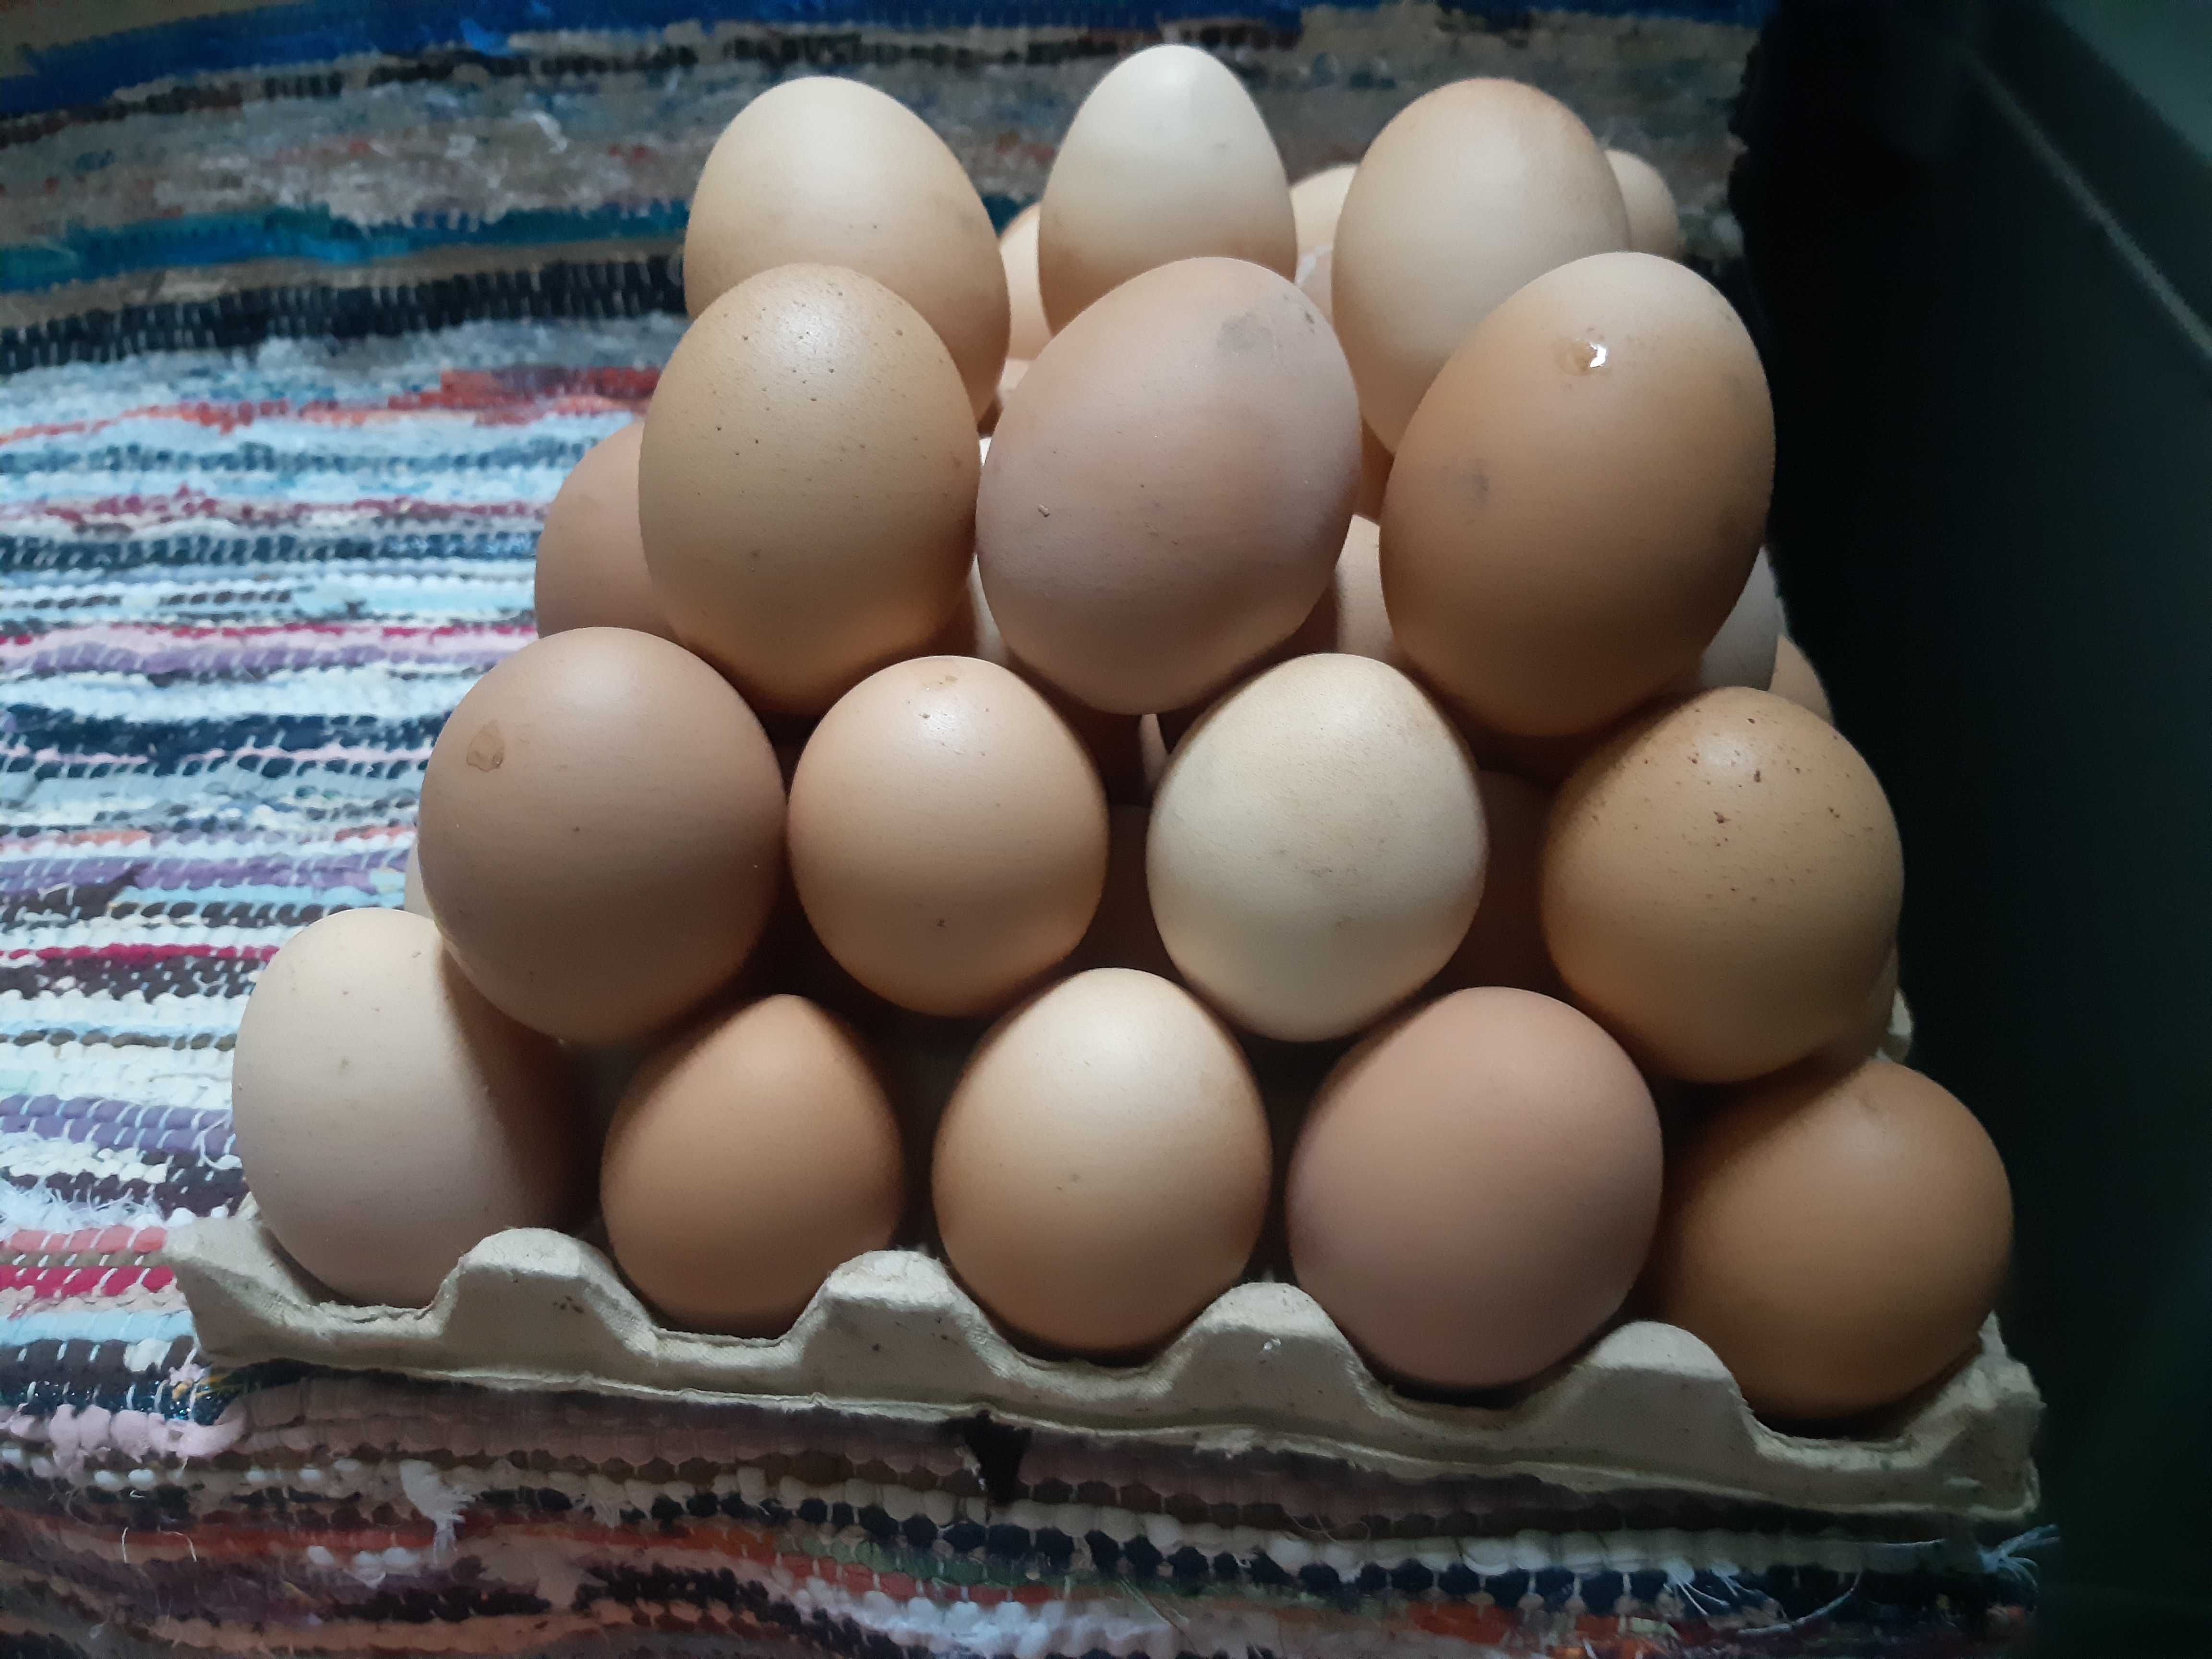 Ouă de găină (pt incubat) și de rață la 1.50 lei bucata